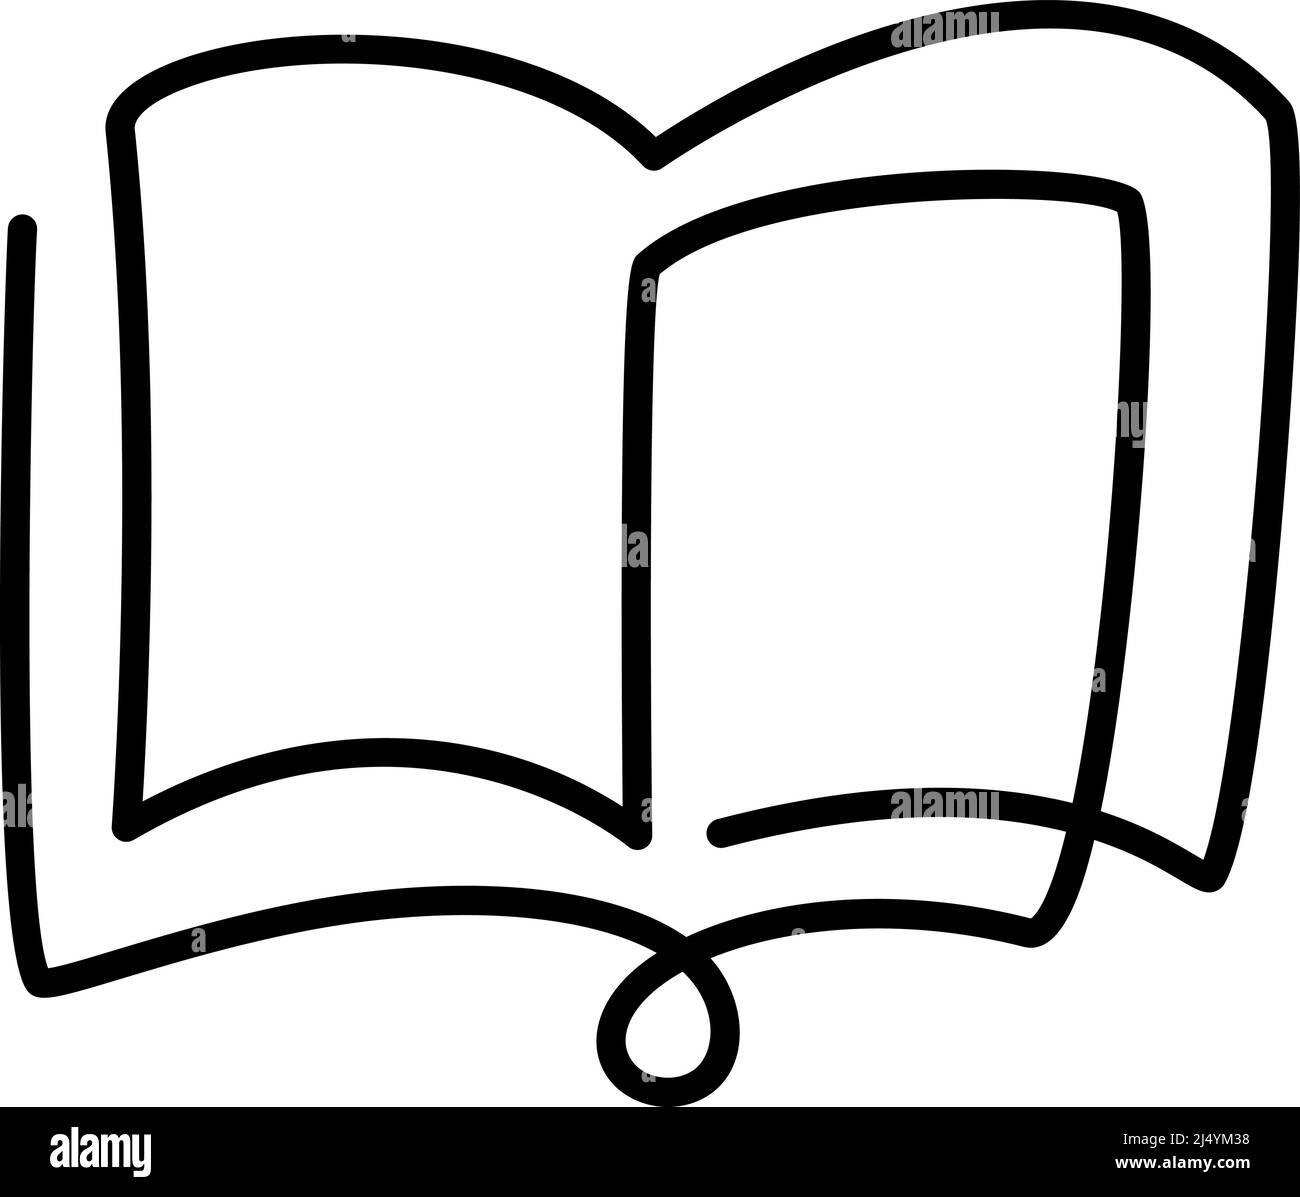 Kontinuierliche eine Zeile Zeichnung offene Buch Bibel mit fliegenden Seiten. Vektor-Illustration Bildung liefert zurück zur Schule Thema Stock Vektor